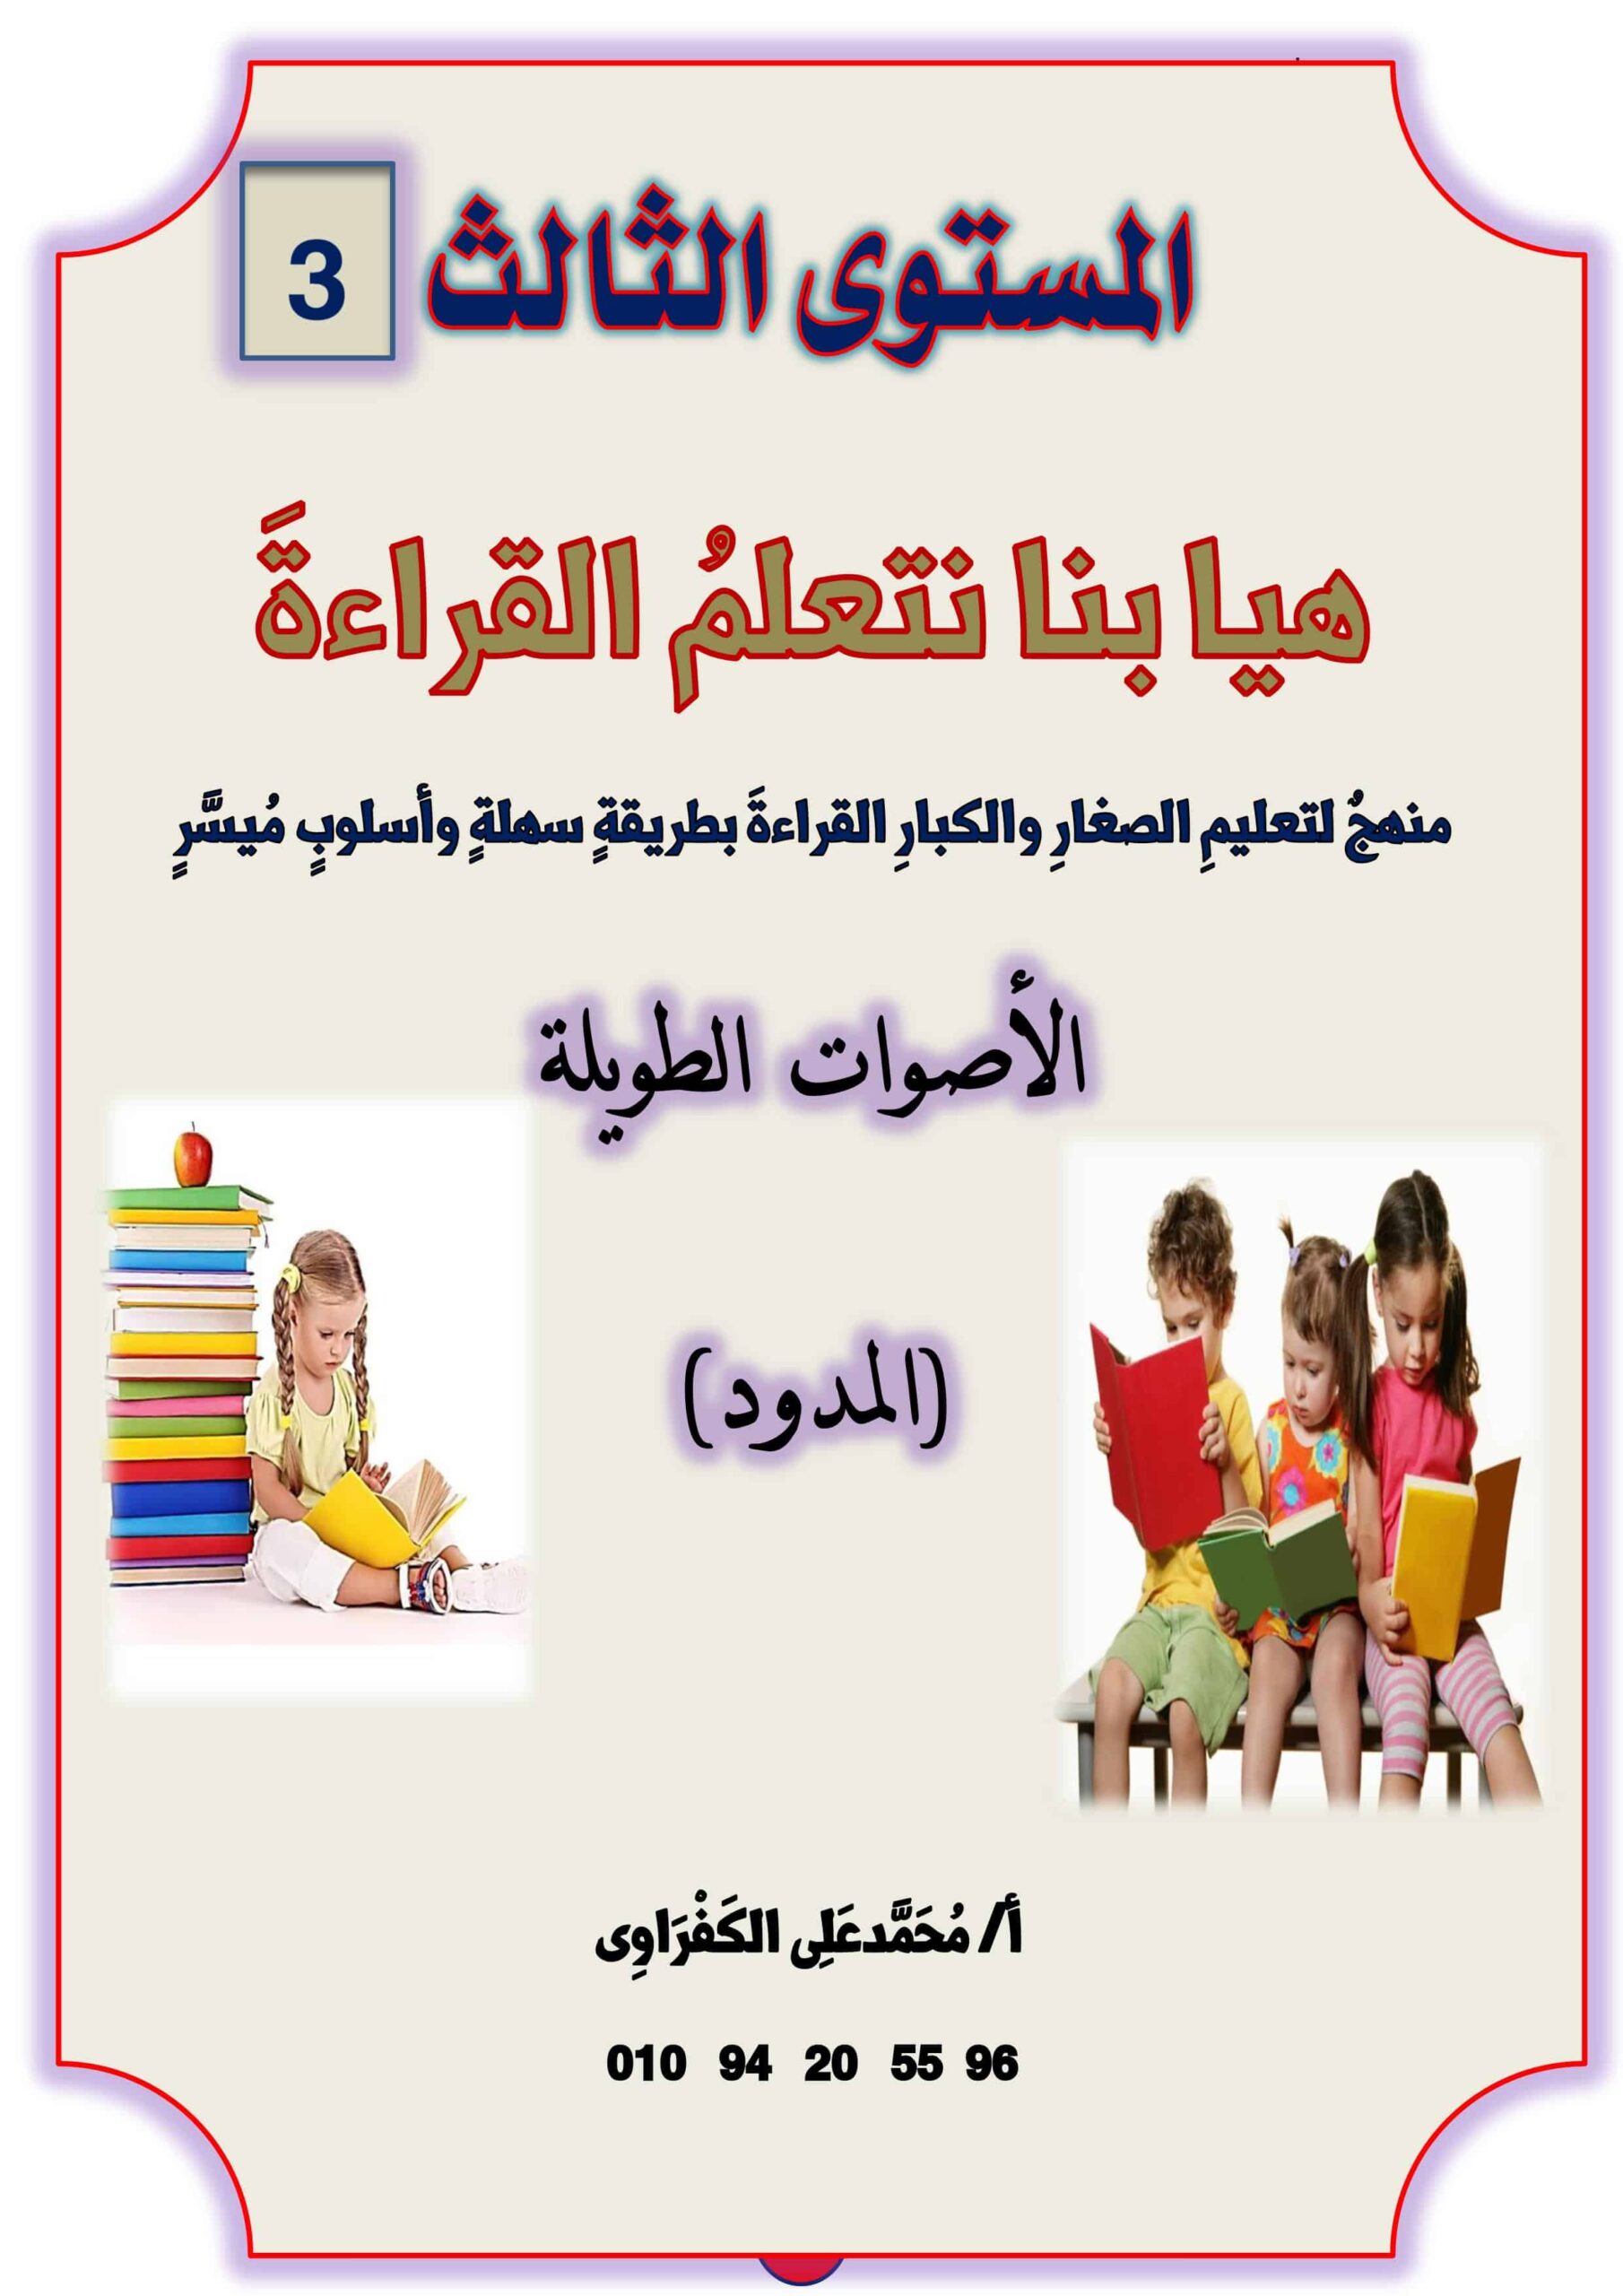 مذكرة هيا بنا نتعلم القراءة المستوى الثالث اللغة العربية الصف الأول